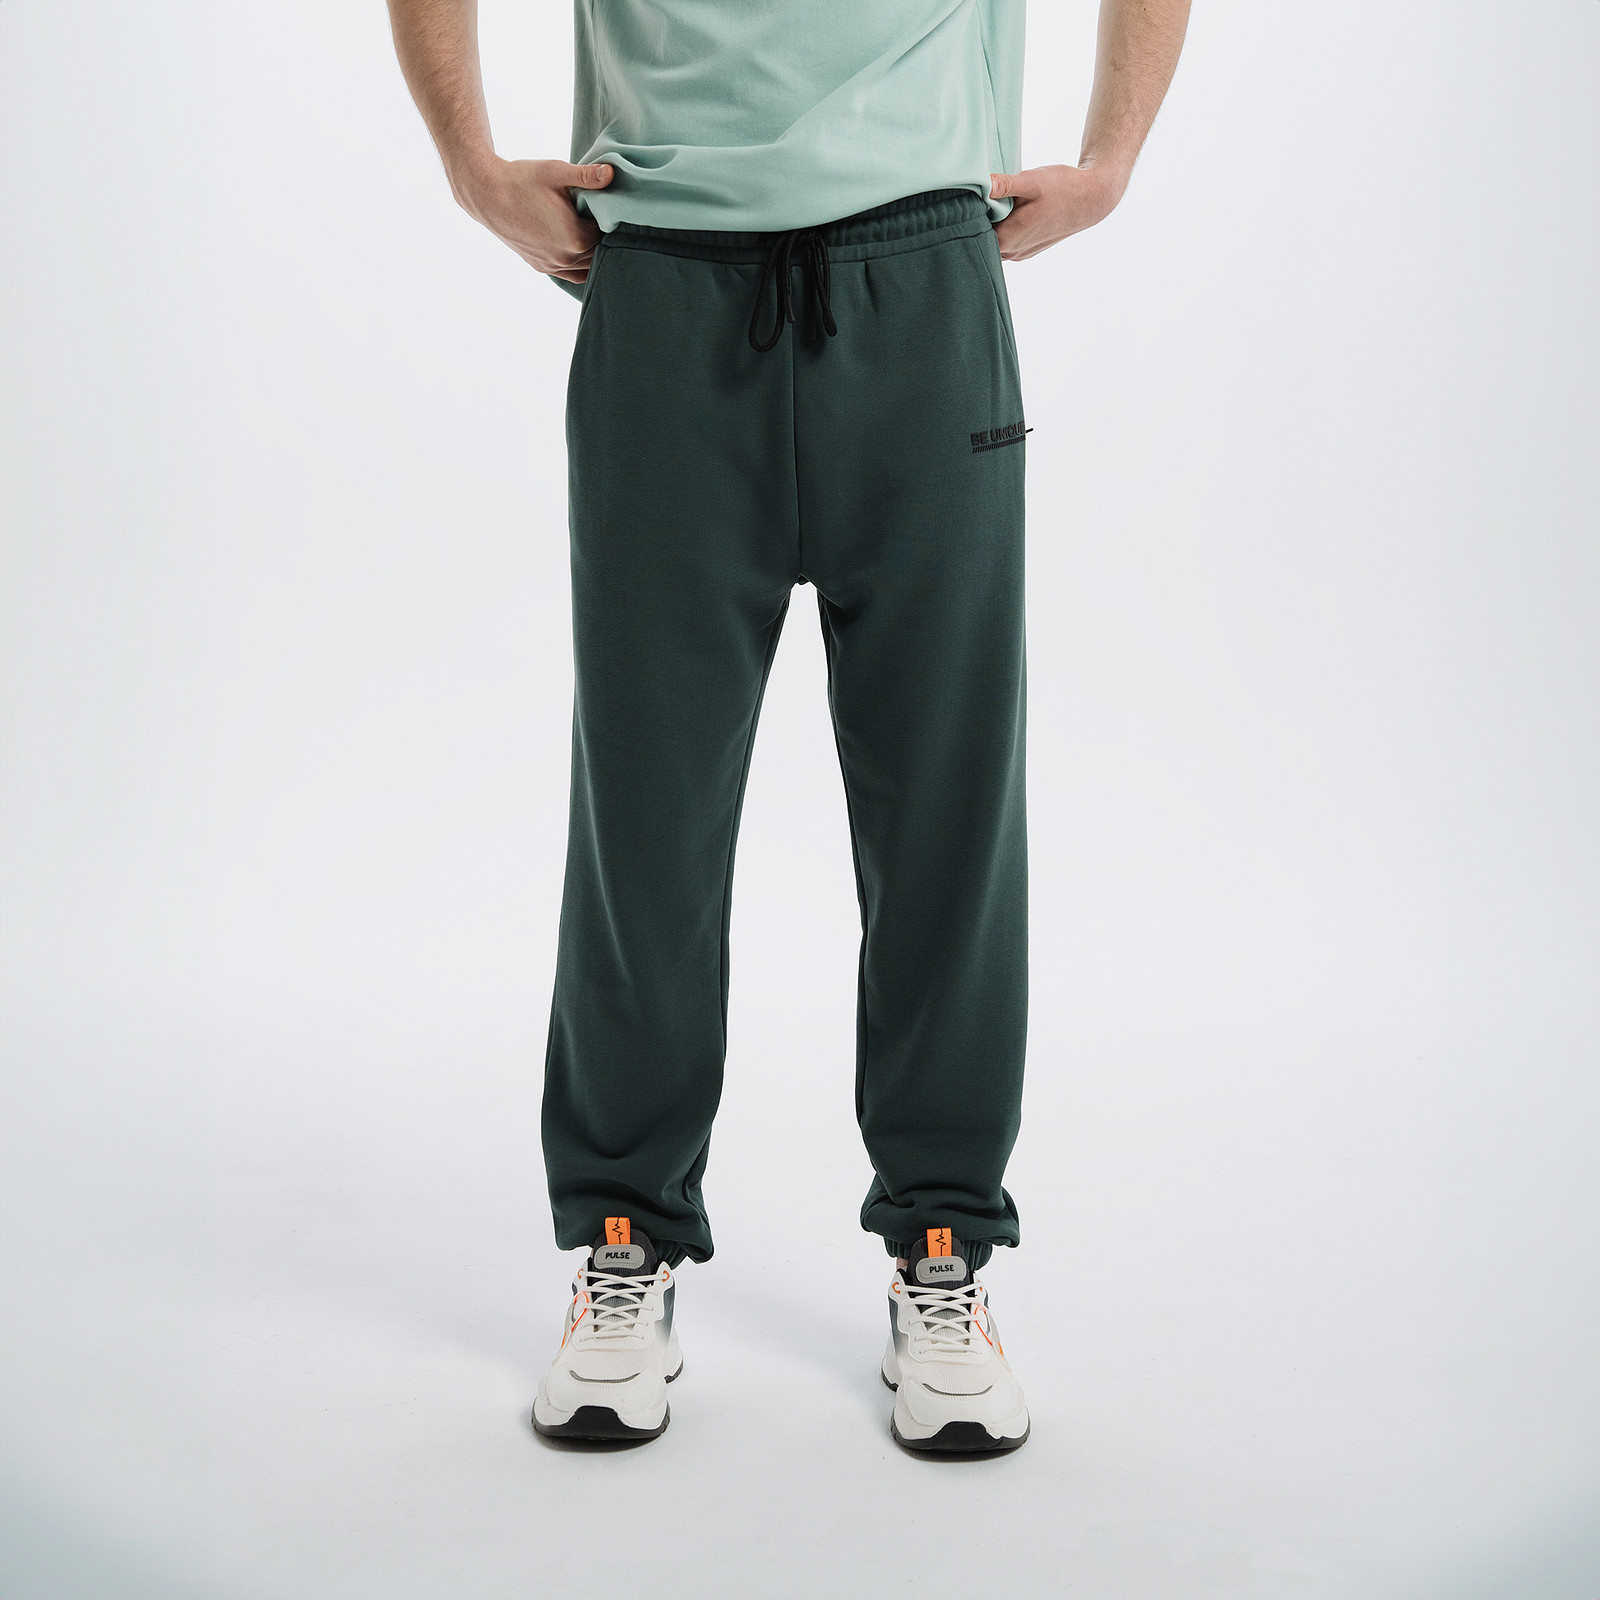 Спортивные брюки мужские PULSE 41MP-P33 зеленые S